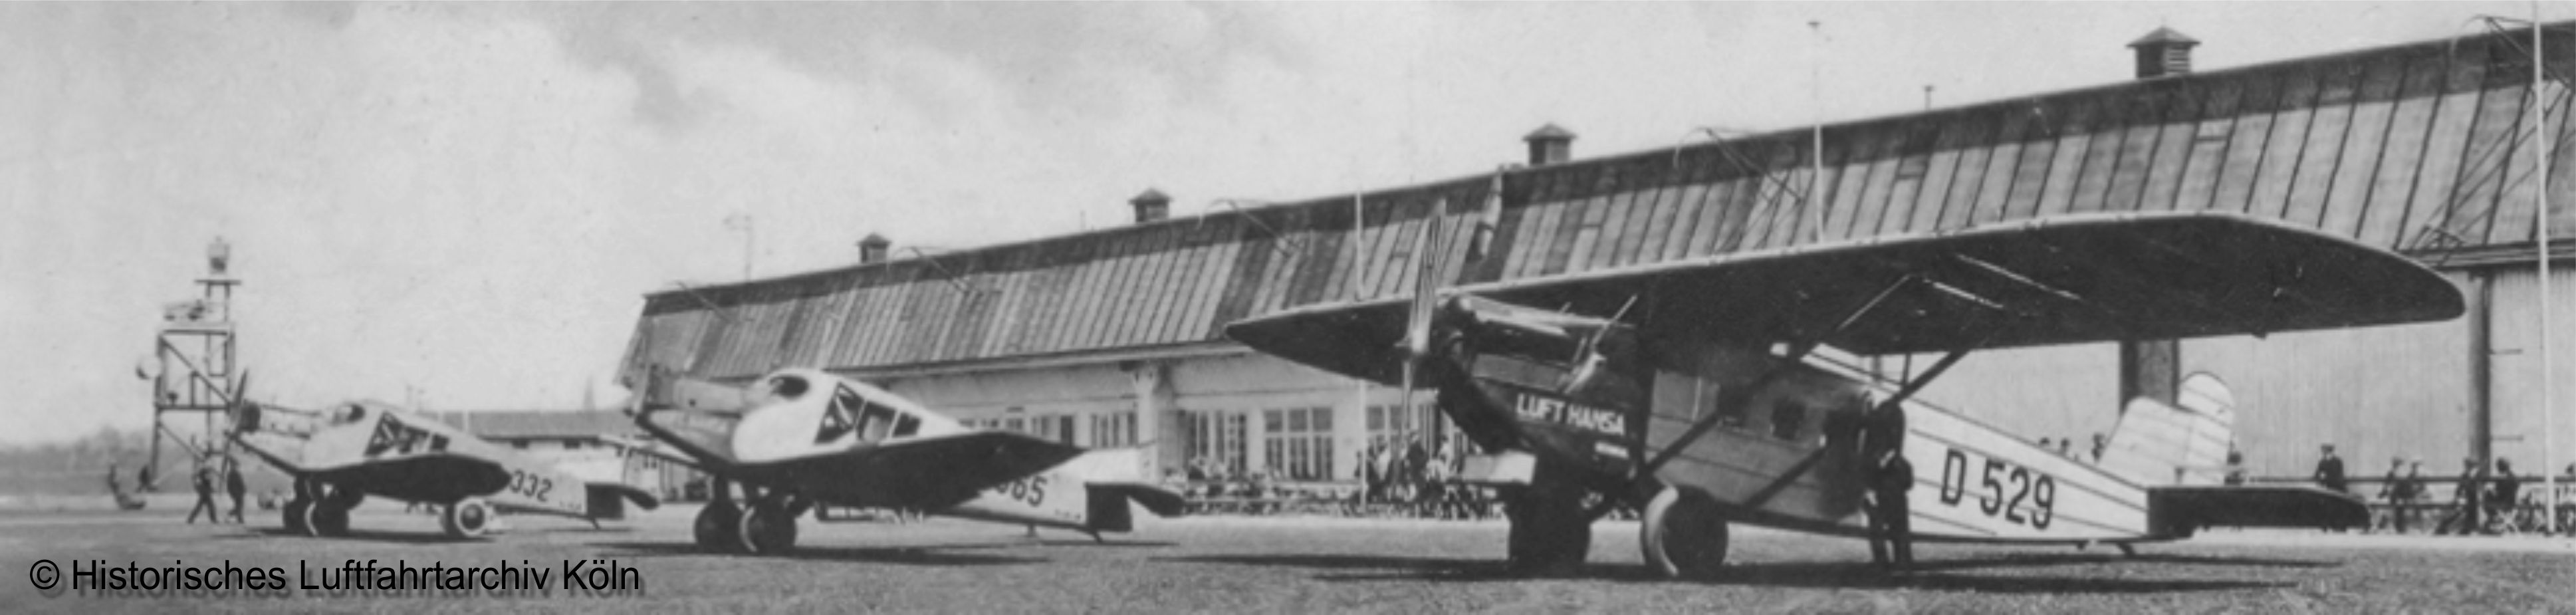 Flughafen Kln Butzweilerhof 1927